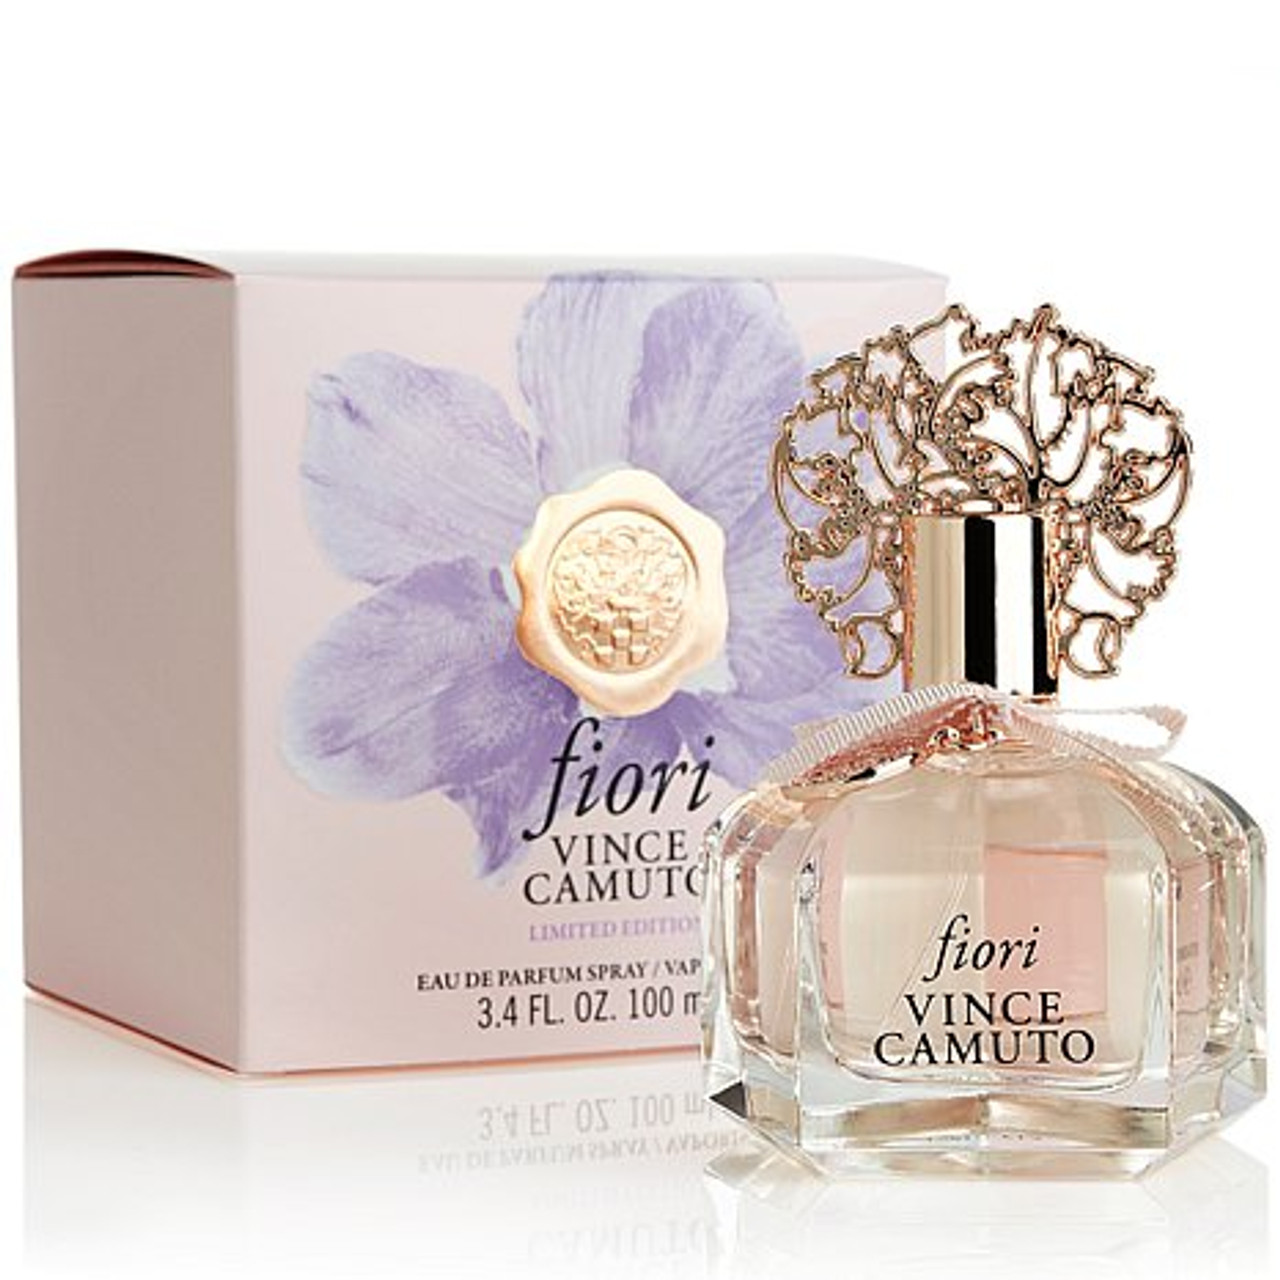 Vince Camuto Fiori 270777 0.25 oz Mini Eau De Parfum for Women, 1 - Jay C  Food Stores